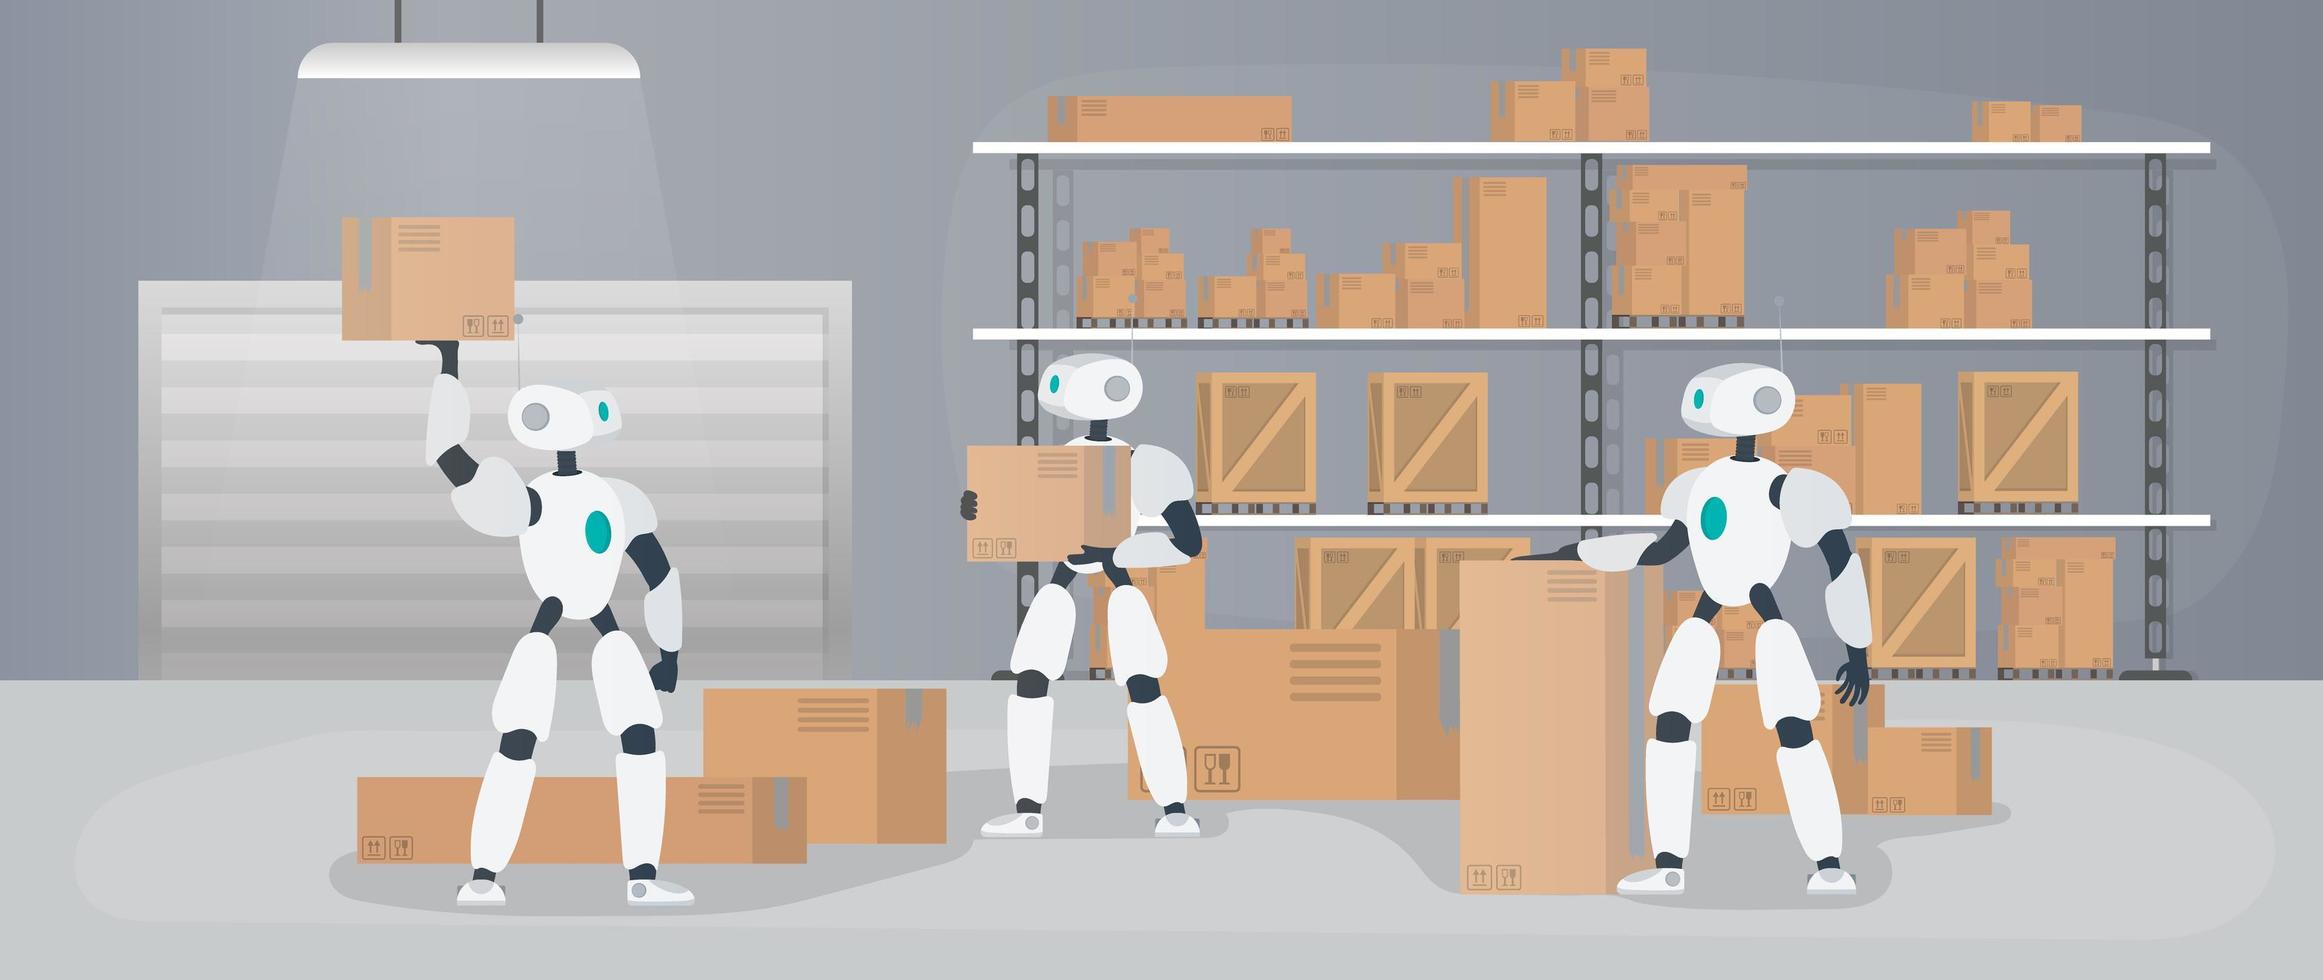 robôs trabalham em um depósito de manufatura. robôs carregam caixas e levantam a carga. conceito futurista de entrega, transporte e carregamento de mercadorias. grande armazém com caixas e paletes. vetor. vetor